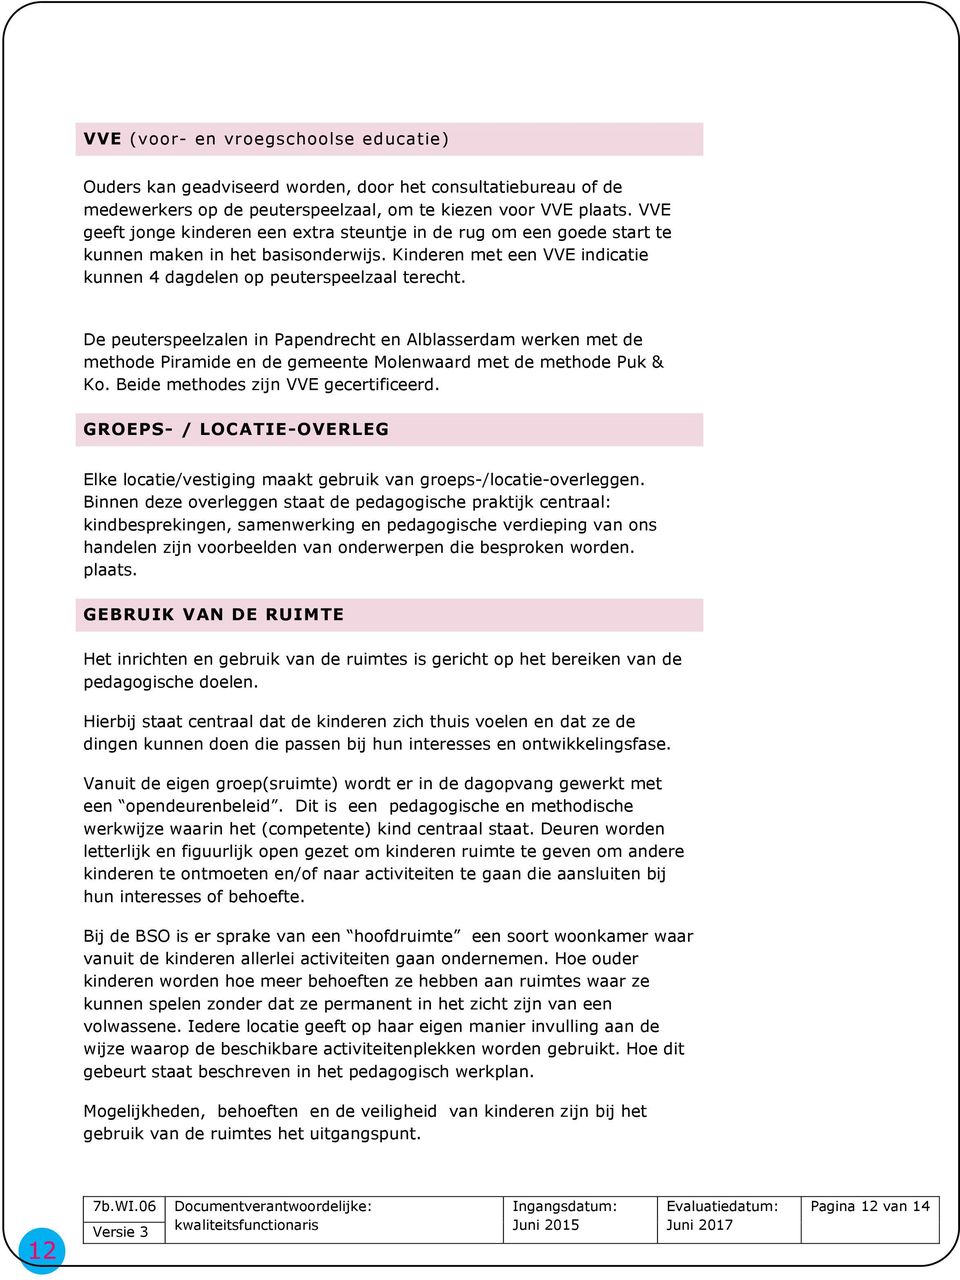 De peuterspeelzalen in Papendrecht en Alblasserdam werken met de methode Piramide en de gemeente Molenwaard met de methode Puk & Ko. Beide methodes zijn VVE gecertificeerd.